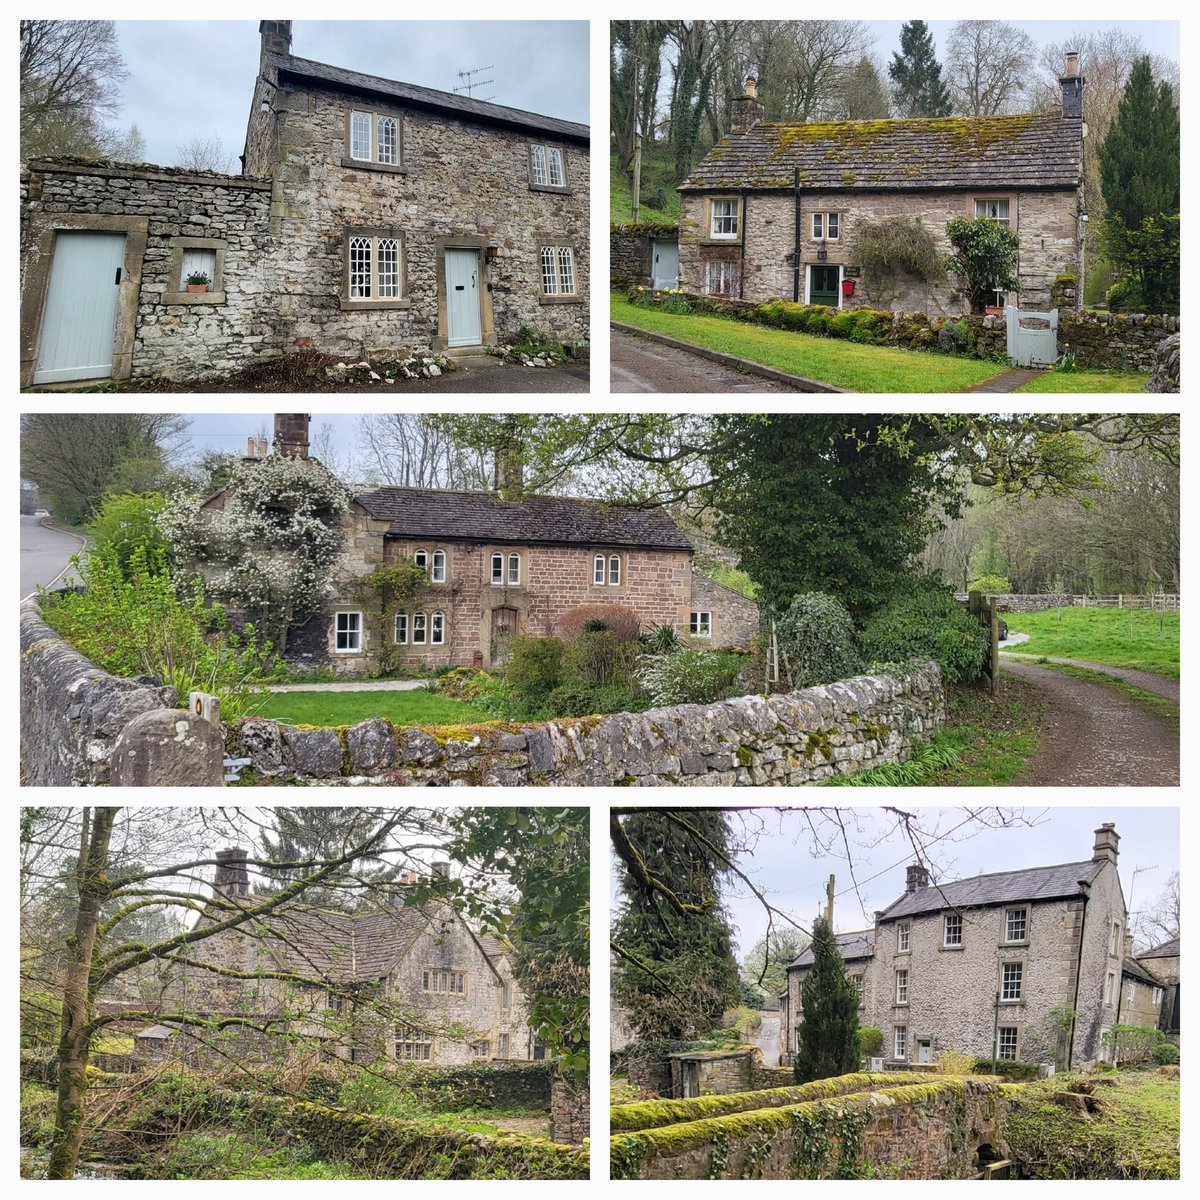 Houses of Alport, Derbyshire #WhitePeak #PeakDistrict